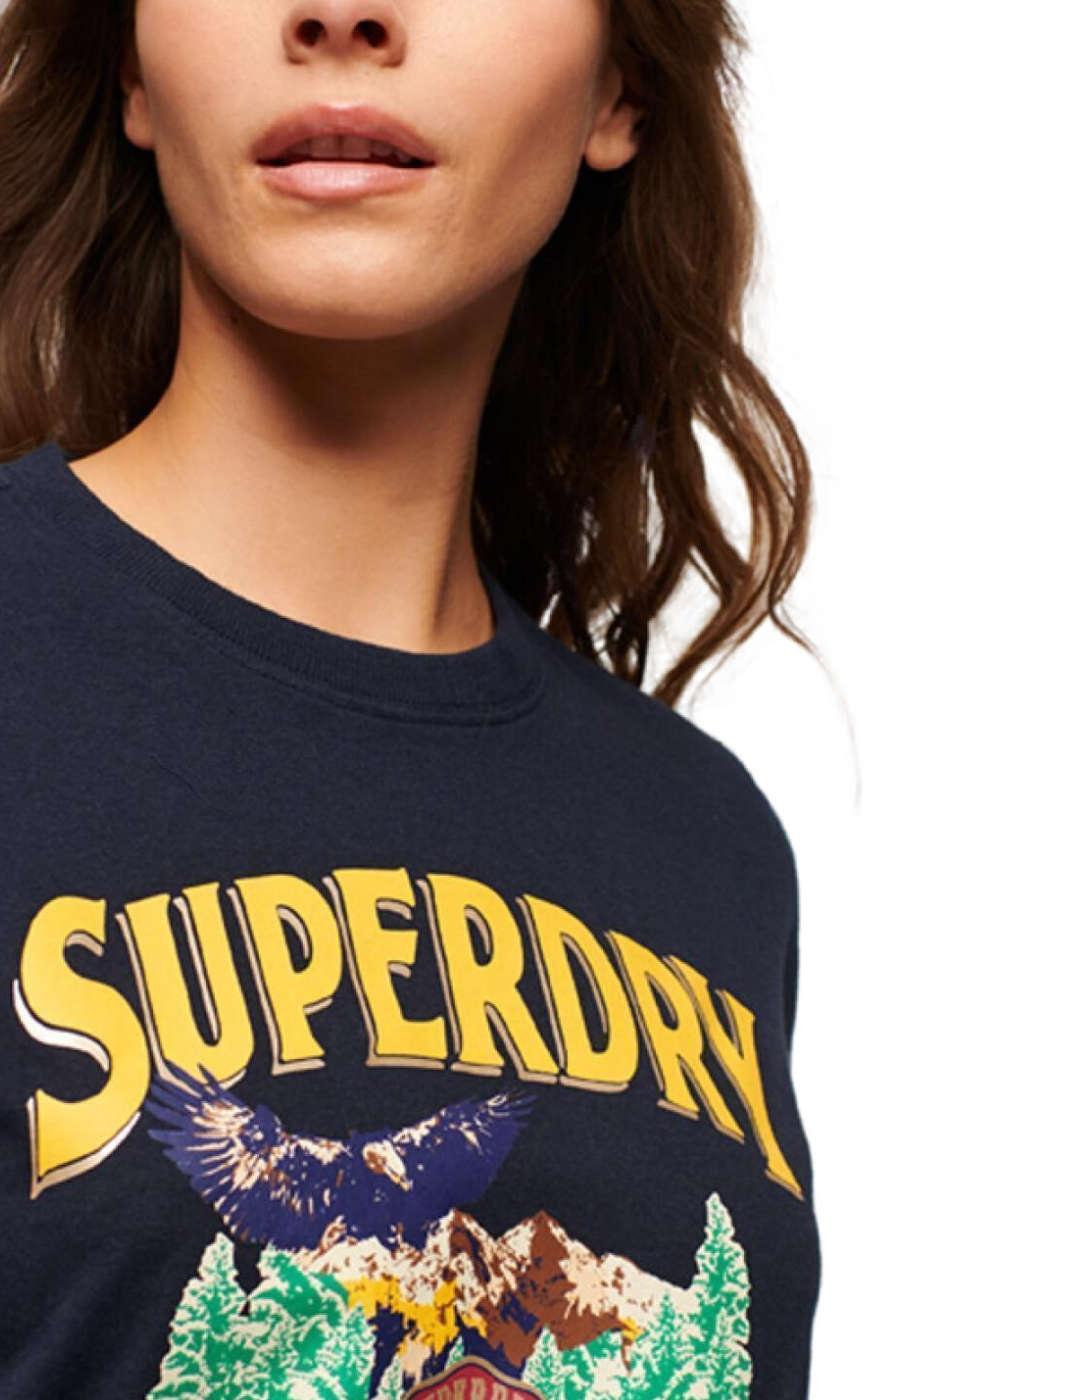 Camiseta Superdry Travel azul marino manga corta para mujer